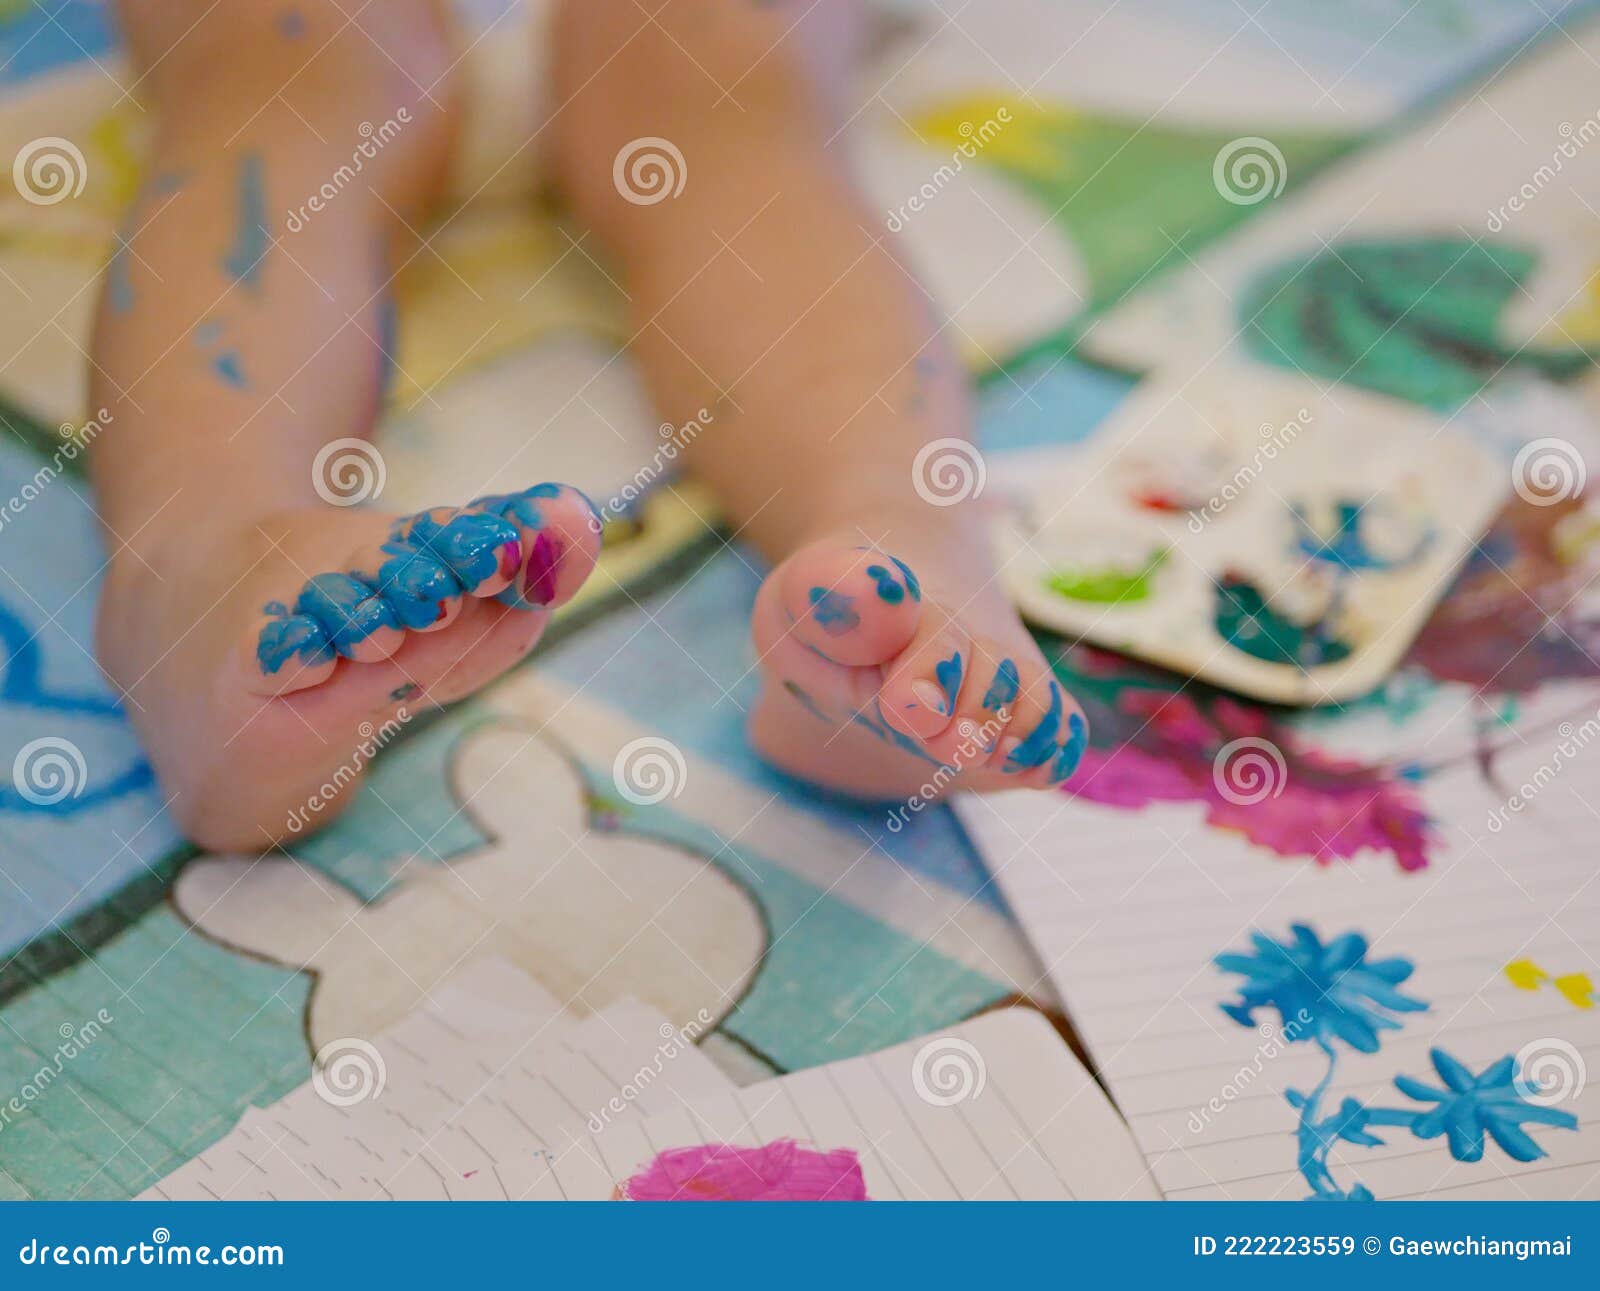 桌子是一位涂了油漆的脚趾甲的女人的脏脚 库存照片. 图片 包括有 水泥, 真菌, 室内, 健康, 被证章的 - 159181522